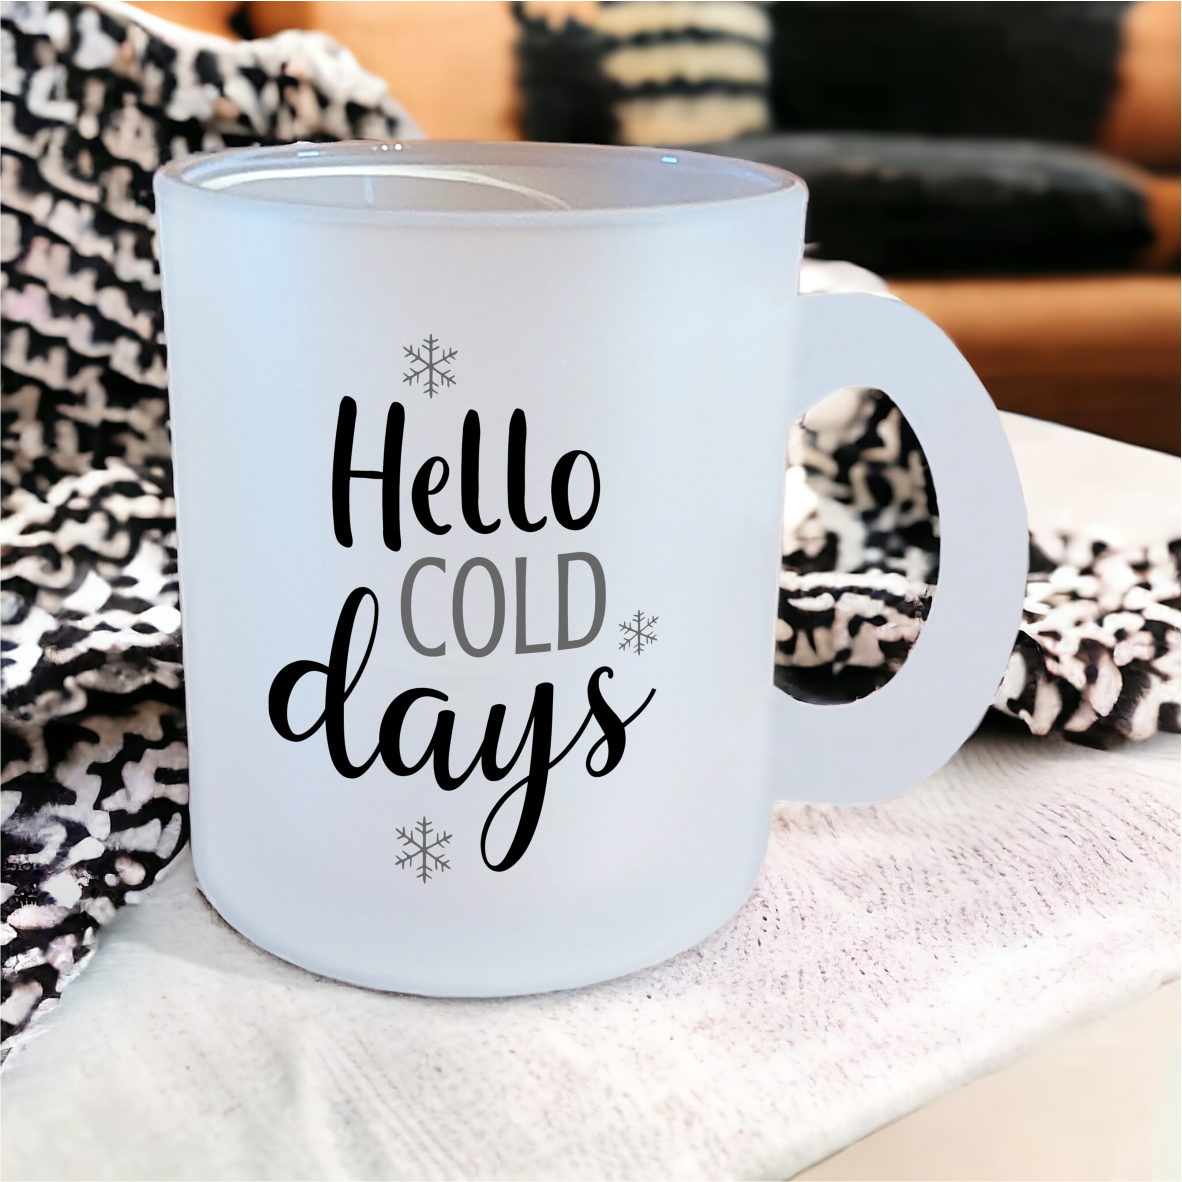 Glastasse "Hello cold days"